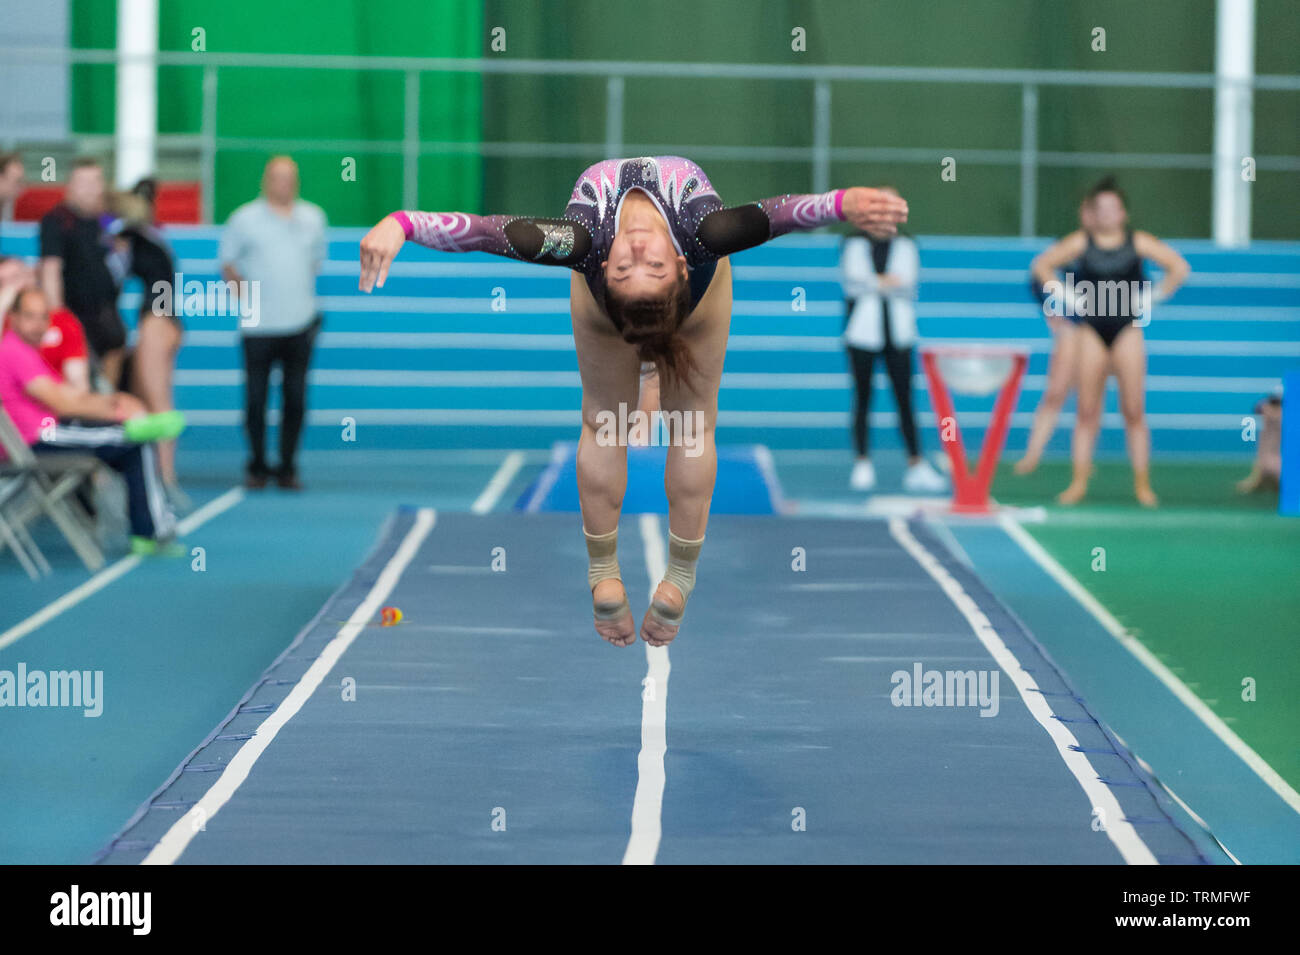 Sheffield, Angleterre, Royaume-Uni. 2 juin 2019. Amy Campbell de la révolution Gymnastics Club en action au cours de séries 2 à l'English Institute of Sport, Sheffield, Royaume-Uni. Banque D'Images